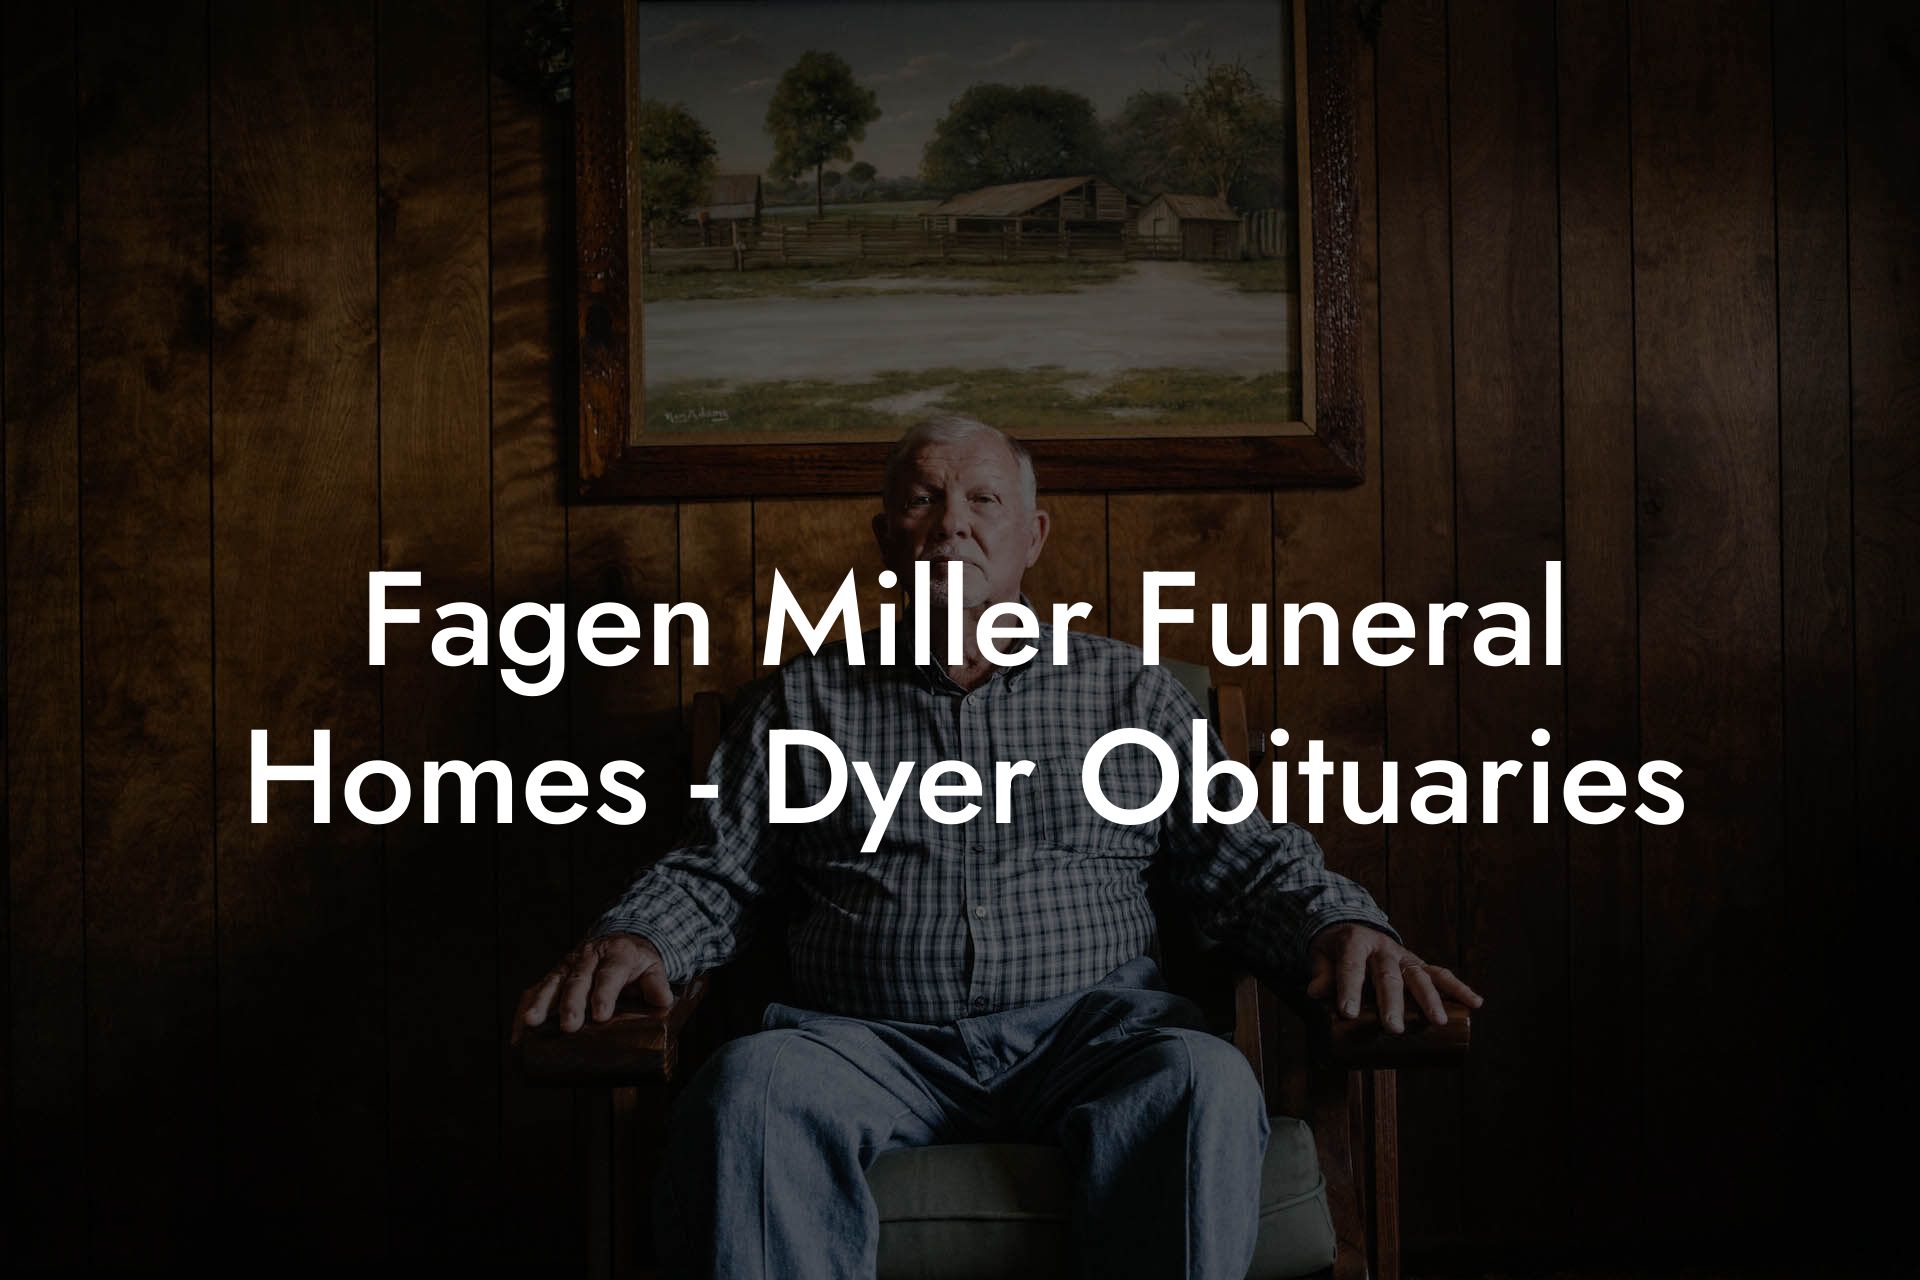 Fagen Miller Funeral Homes - Dyer Obituaries